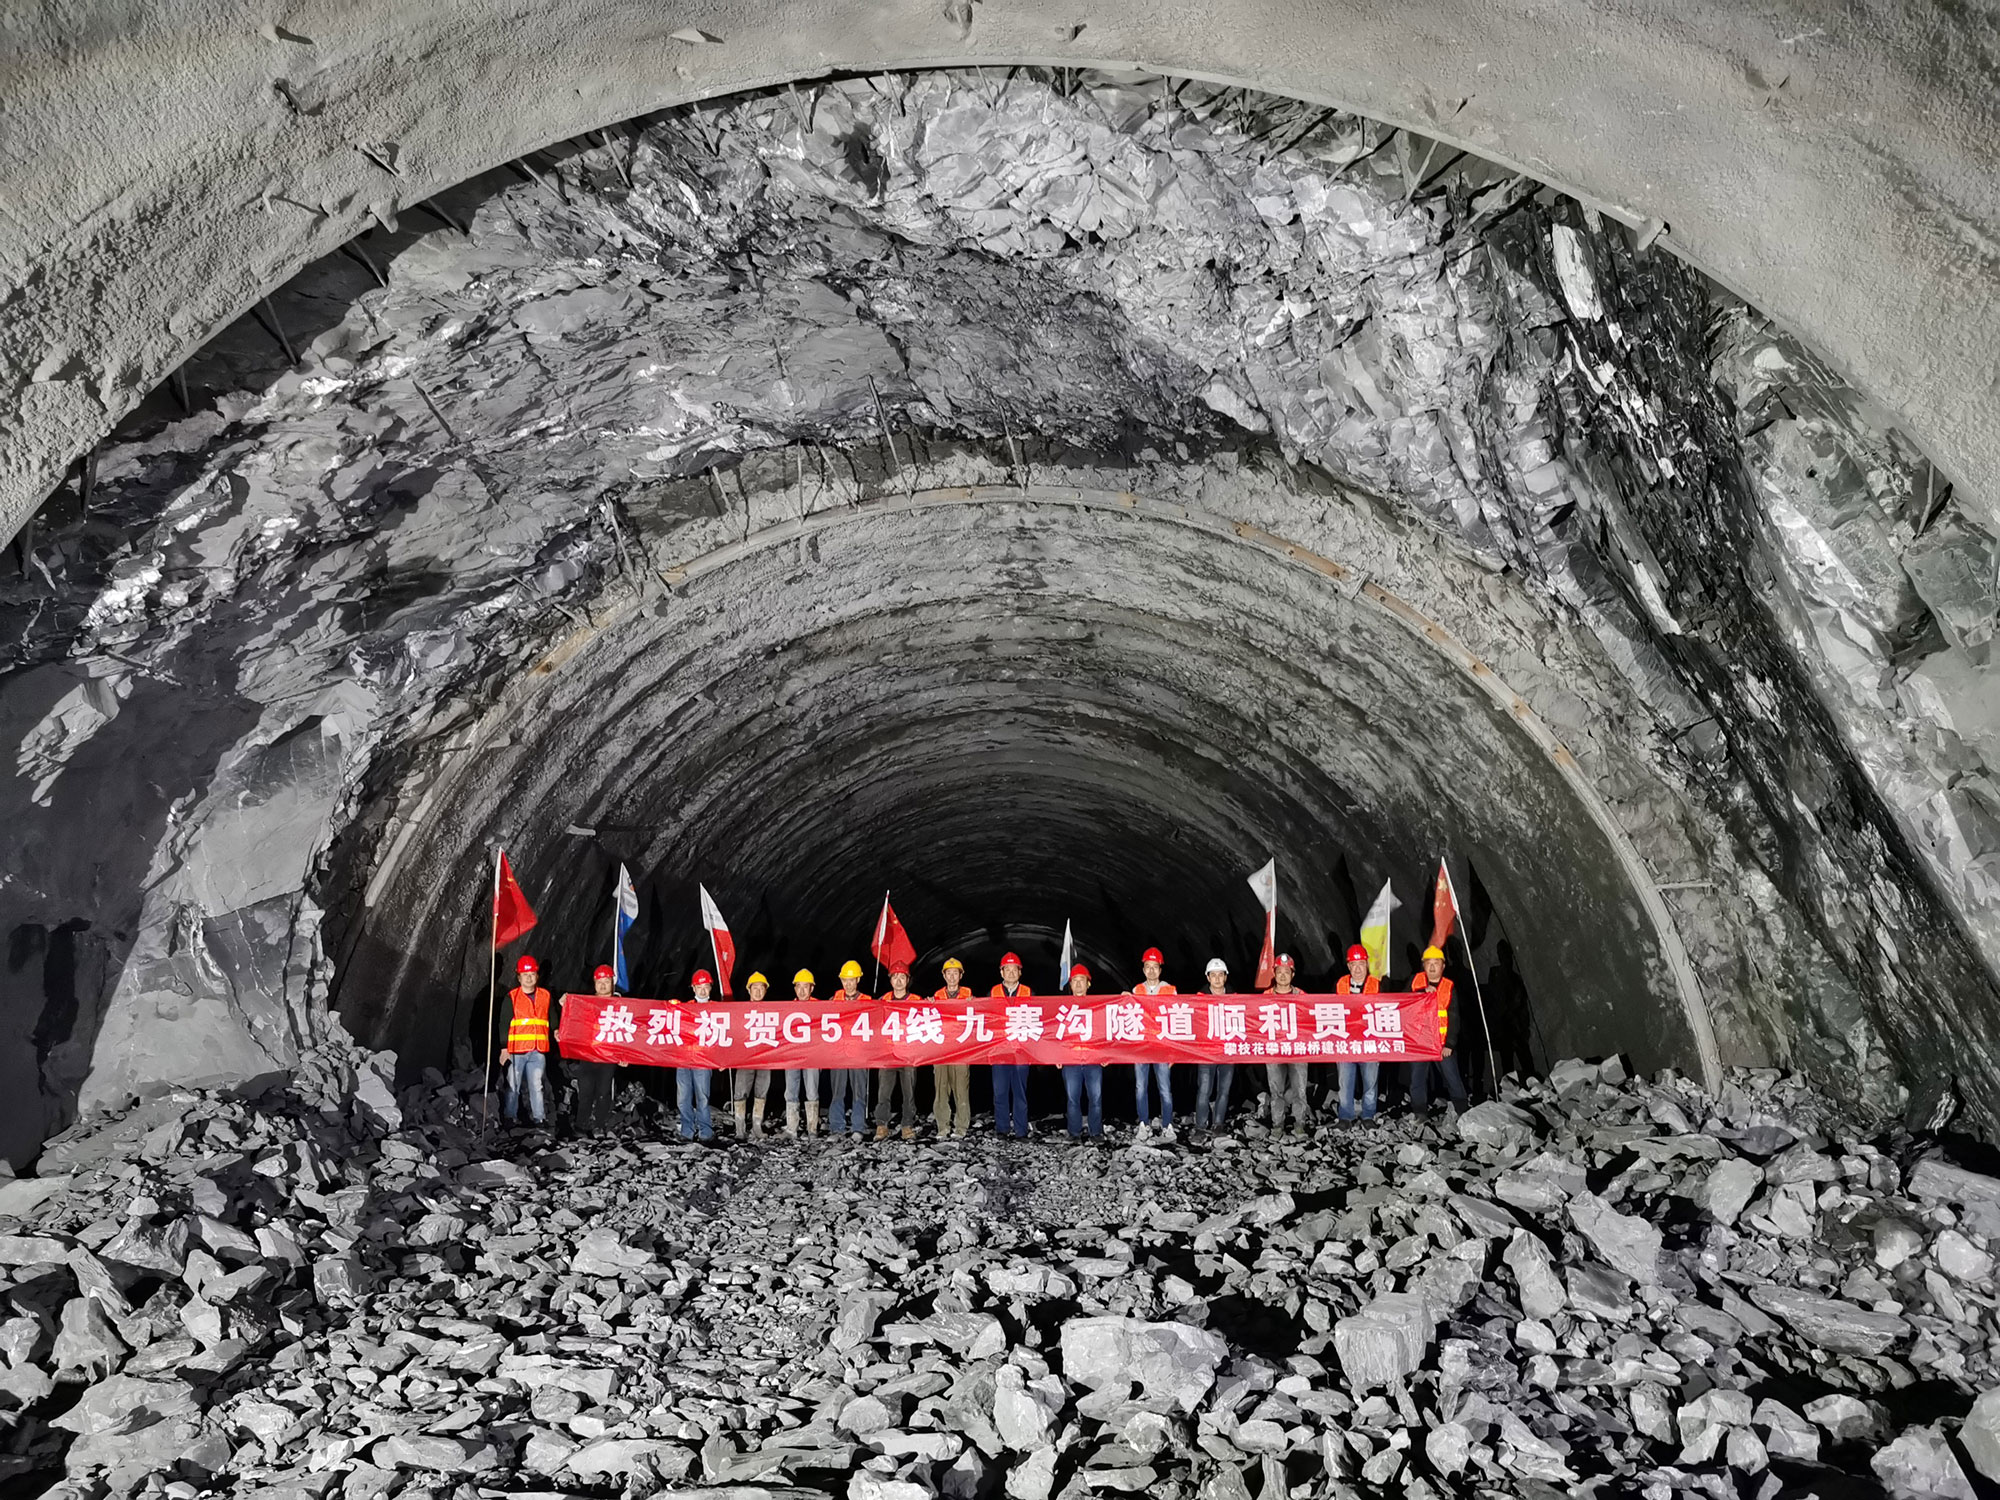 恭喜G544線川主寺至九寨溝縣城段災后恢復重建工程九寨隧道貫通�。�！